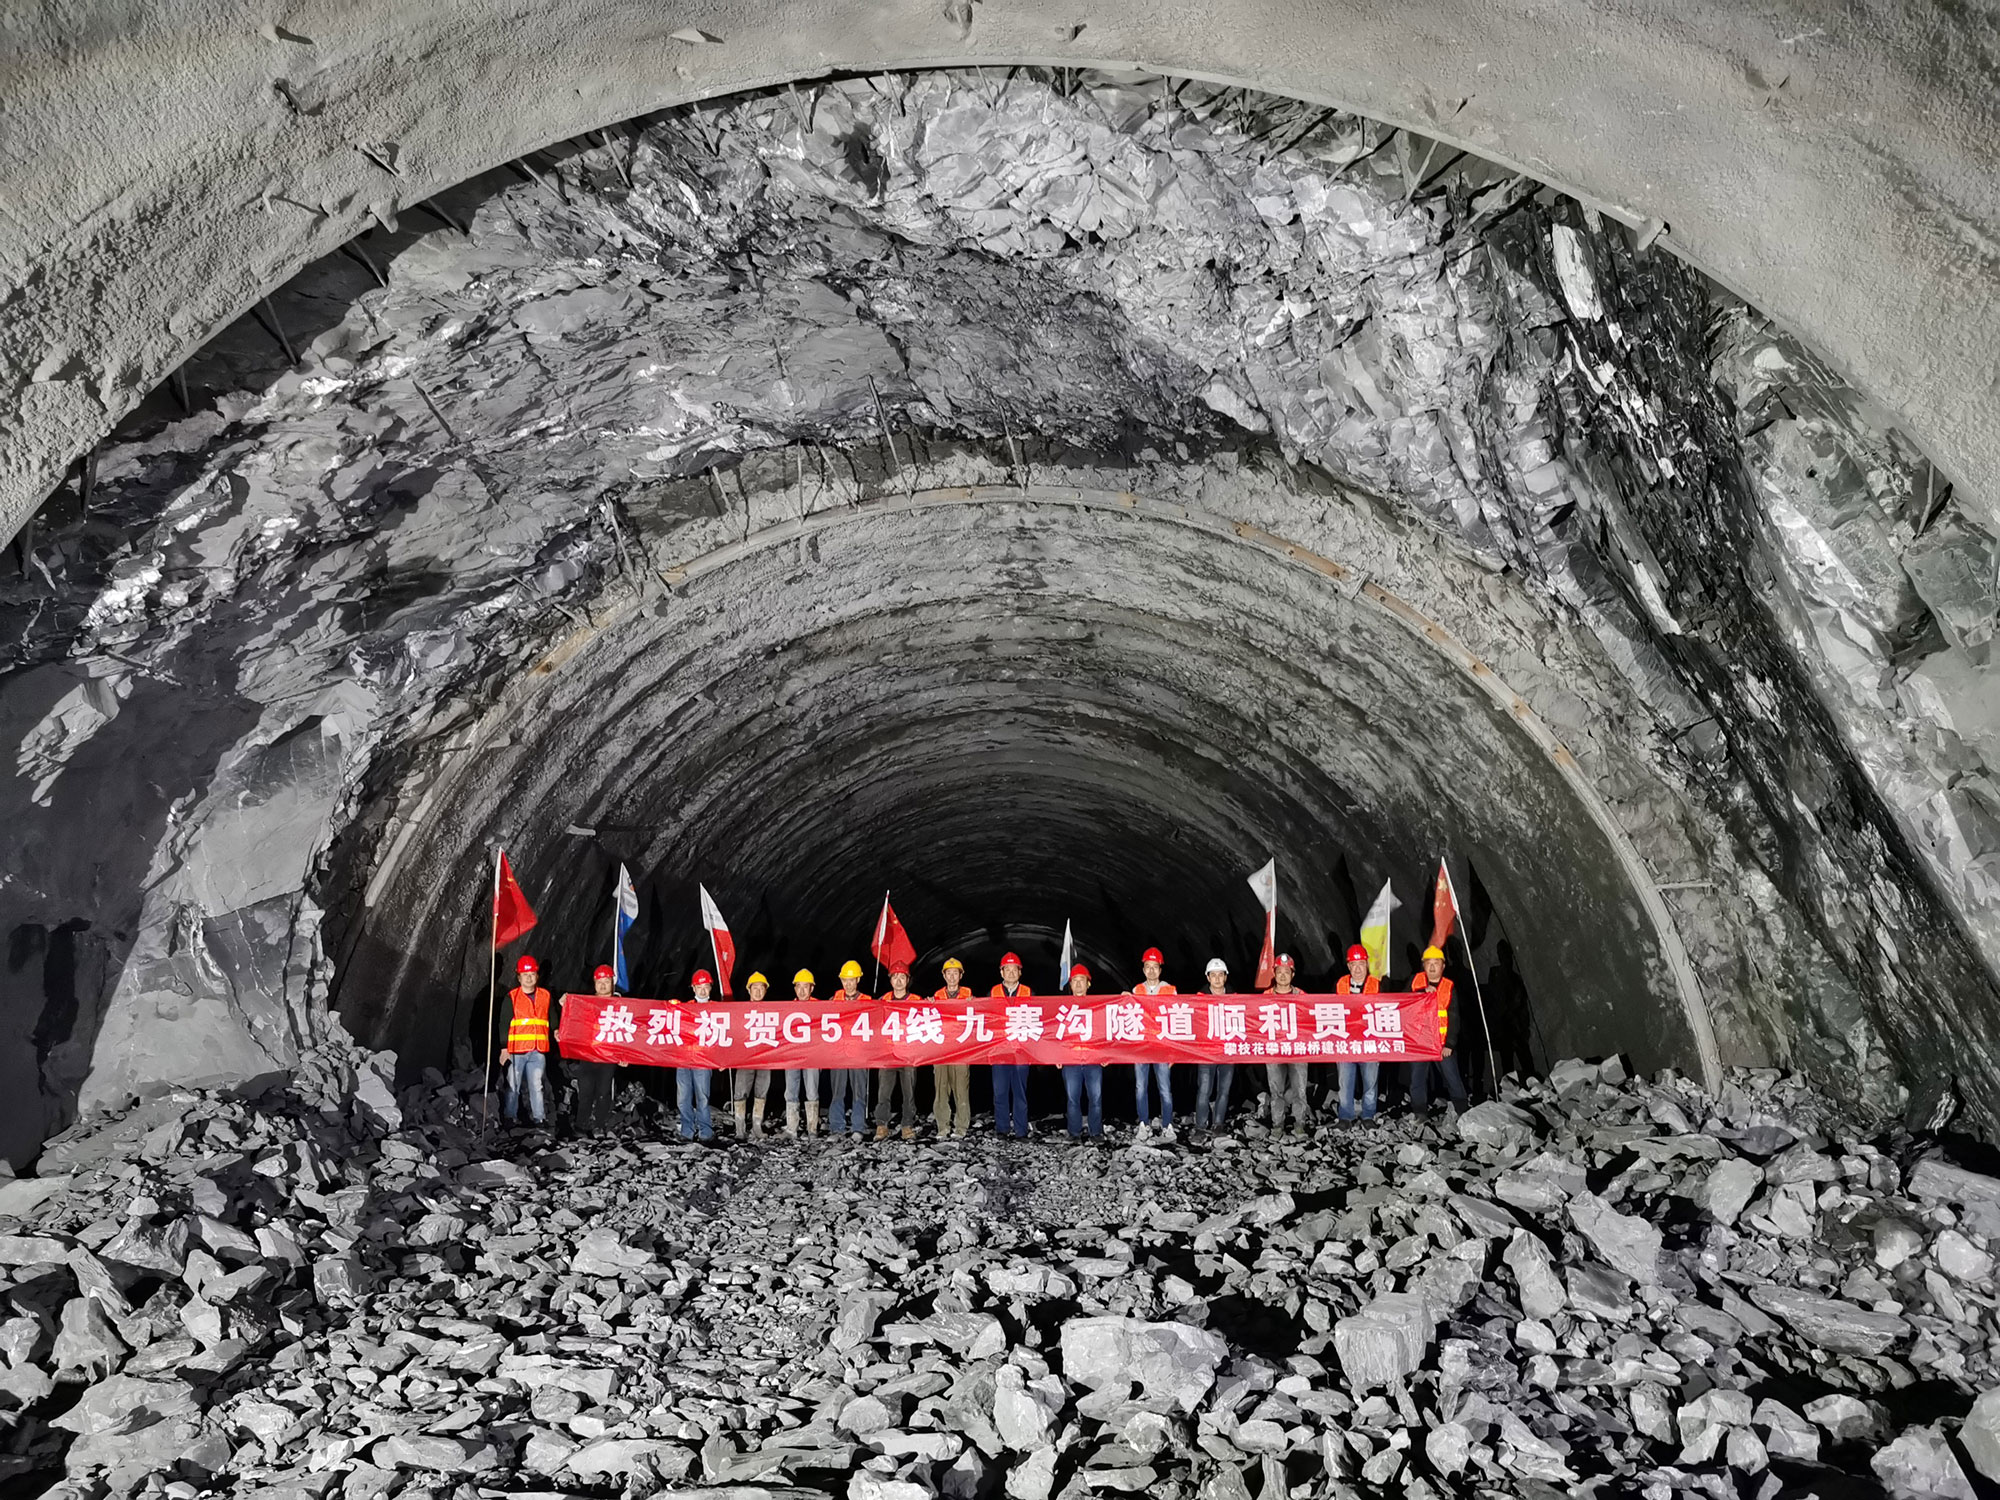 恭喜G544線川主寺至九寨溝縣城段災后恢復重建工程九寨隧道貫通�。�！